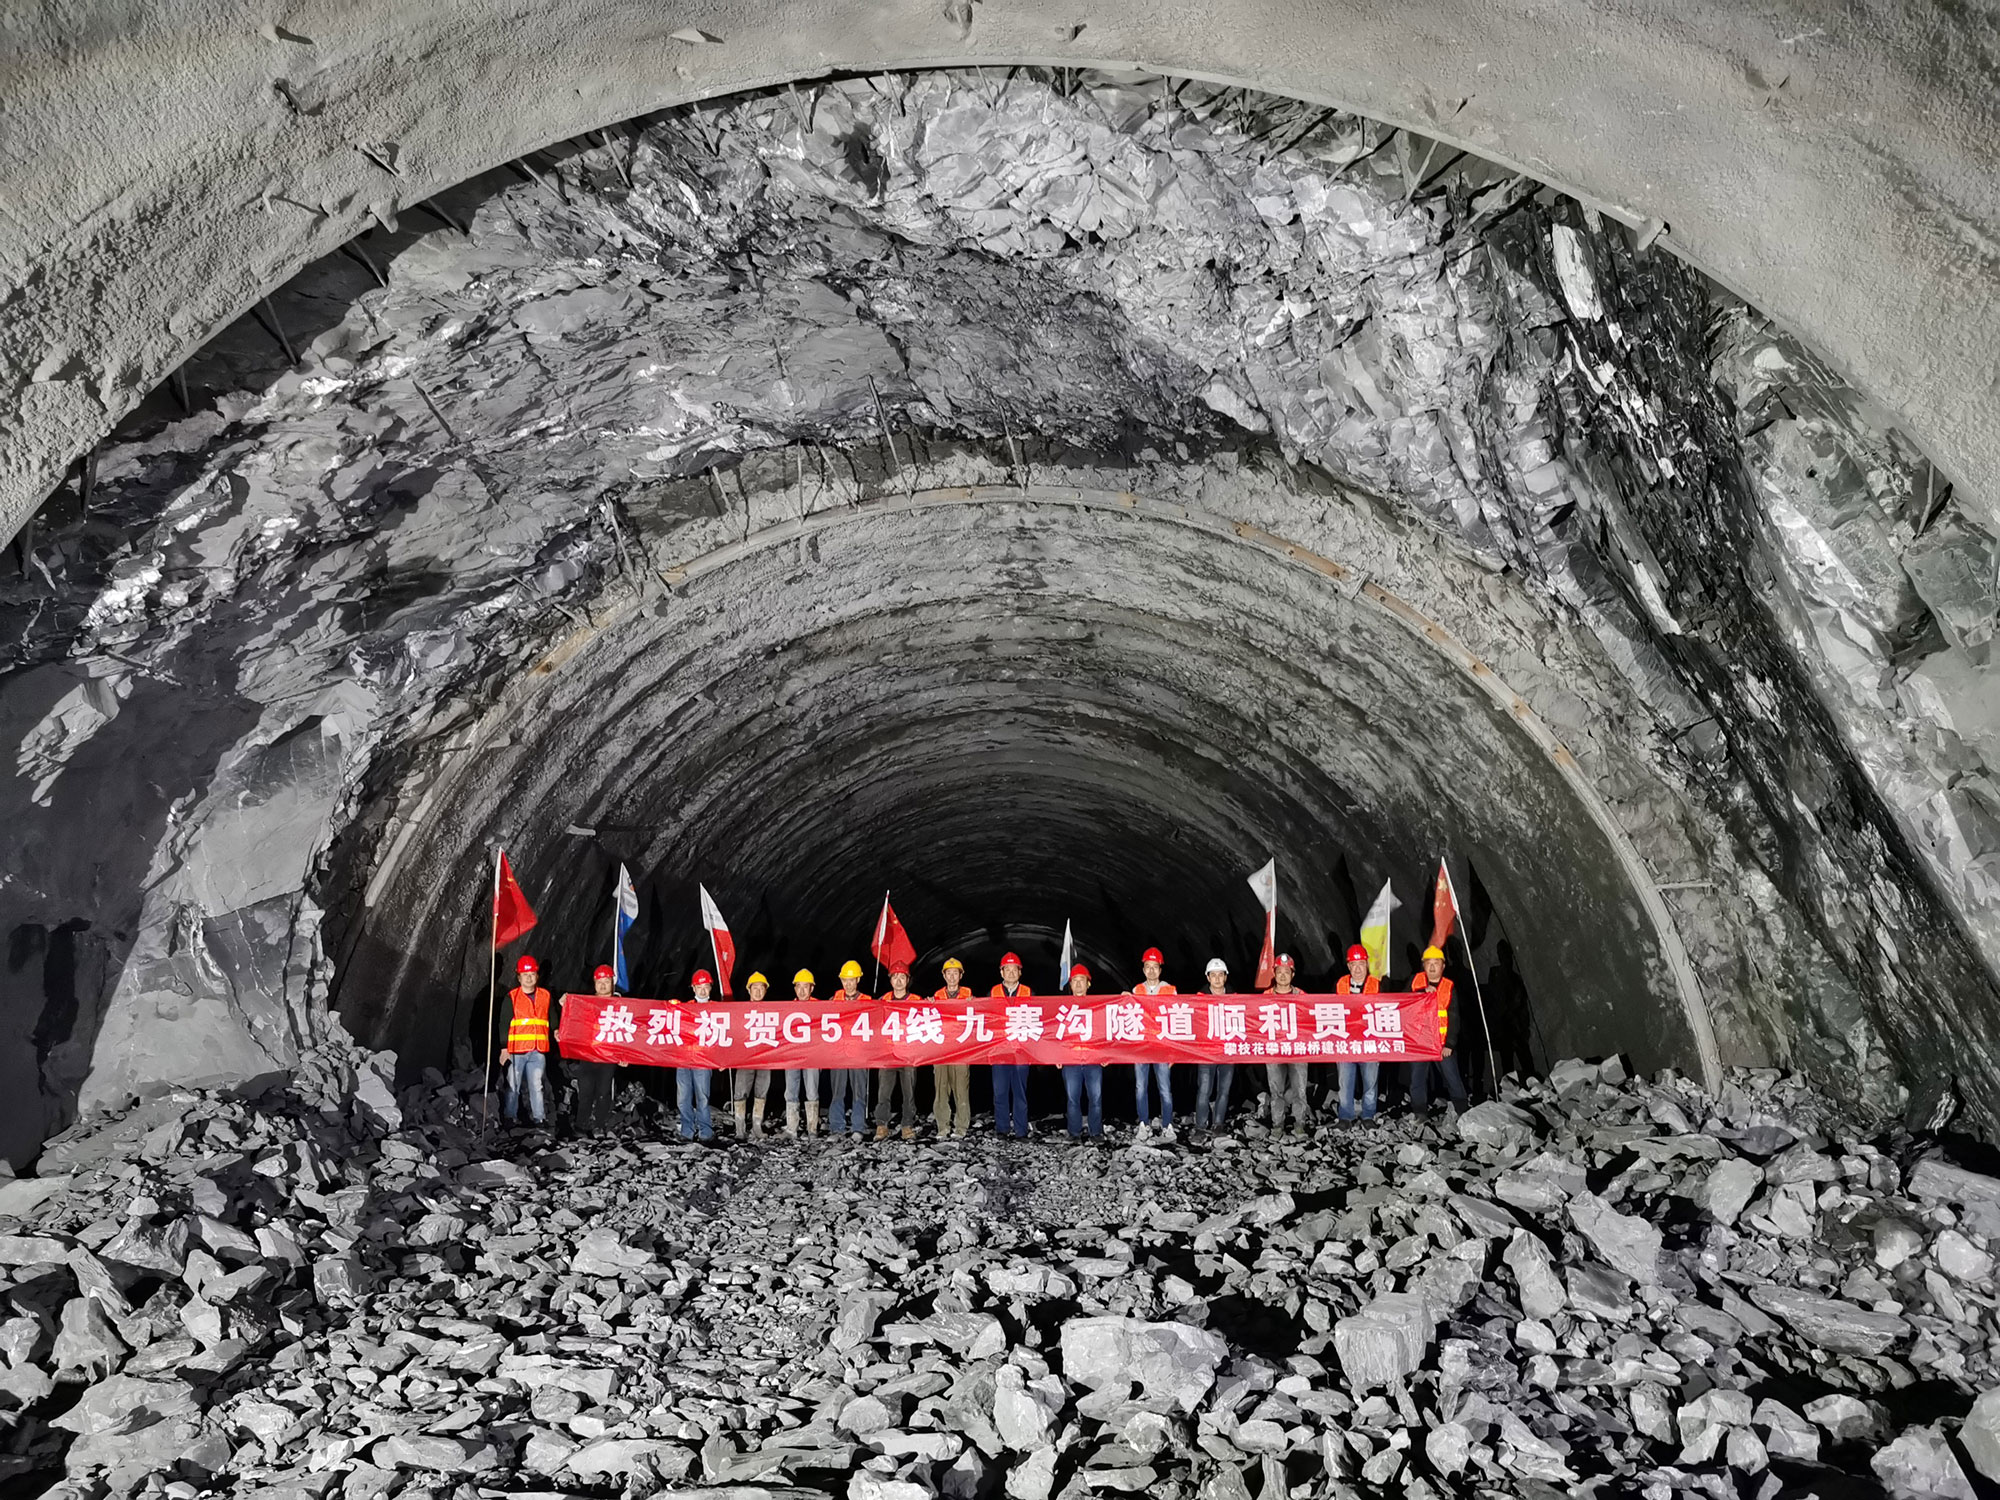 恭喜G544線川主寺至九寨溝縣城段災后恢復重建工程九寨隧道貫通�。�！